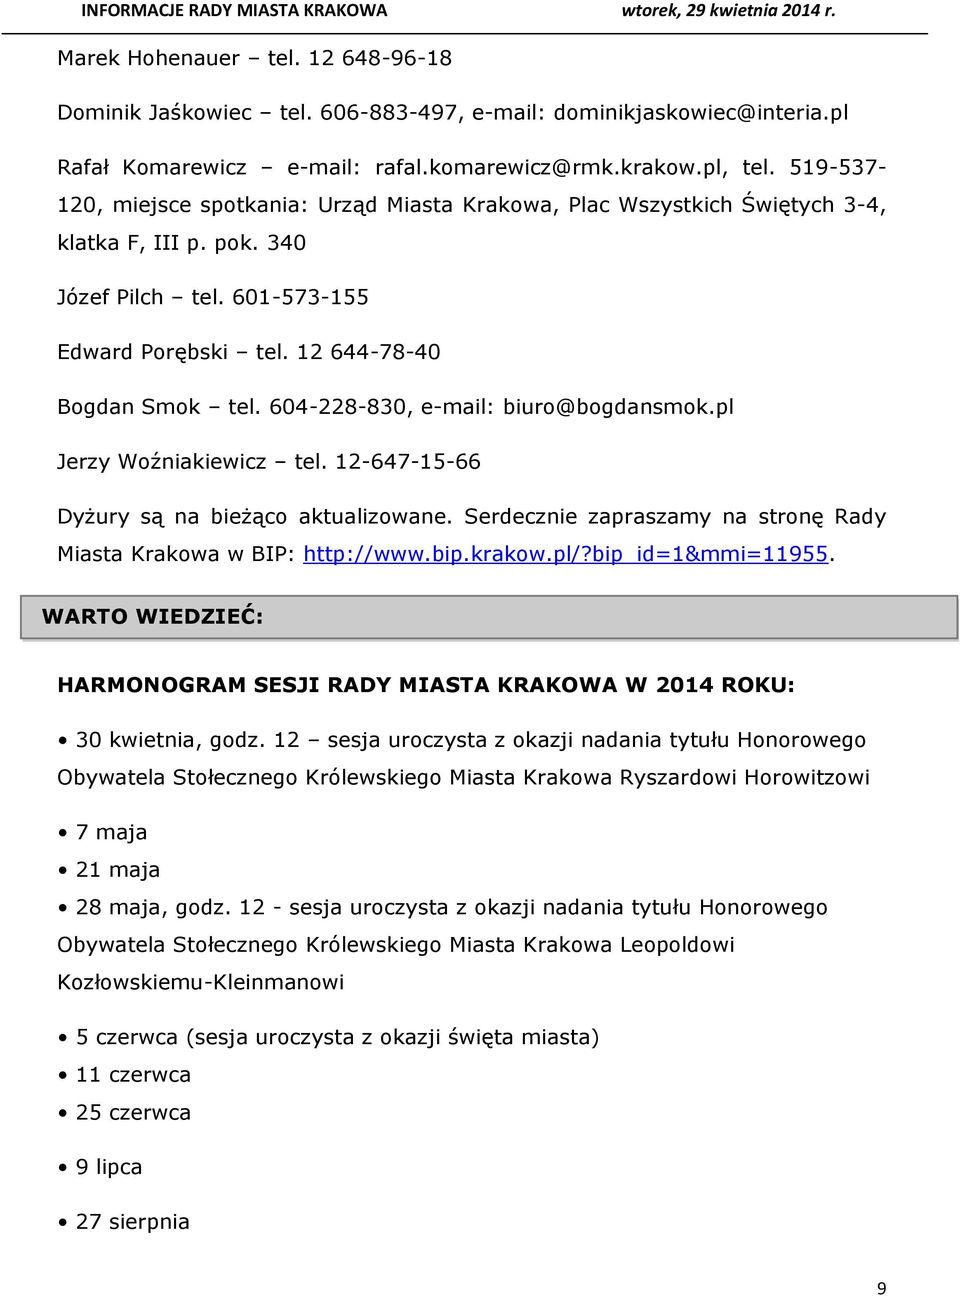 604-228-830, e-mail: biuro@bogdansmok.pl Jerzy Woźniakiewicz tel. 12-647-15-66 Dyżury są na bieżąco aktualizowane. Serdecznie zapraszamy na stronę Rady Miasta Krakowa w BIP: http://www.bip.krakow.pl/?